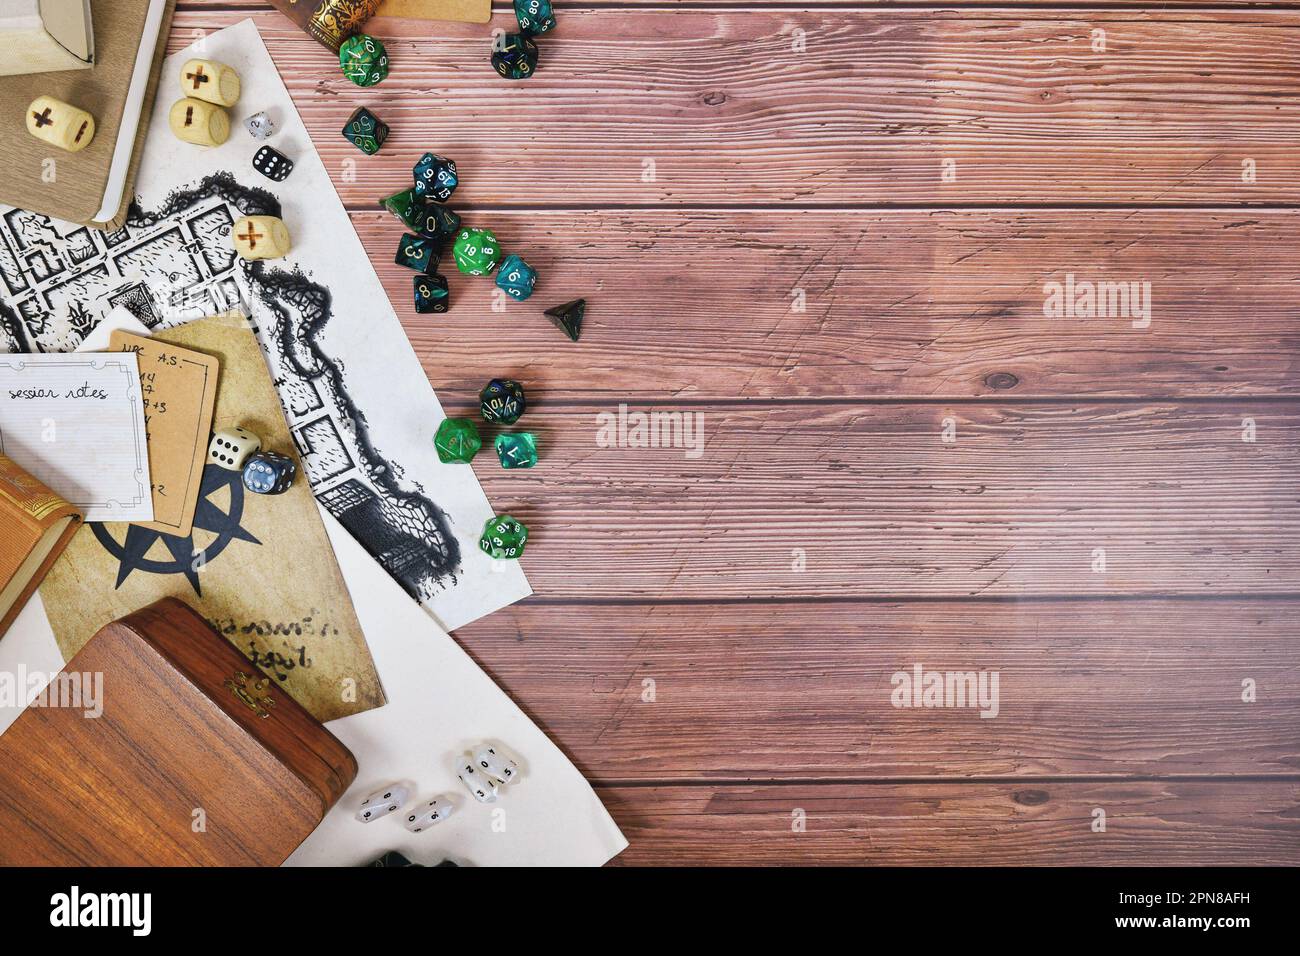 Tischrollenspiel flach liegender Hintergrund mit bunten Rollenwürfeln, Regelbüchern und Notizen auf Holzhintergrund mit Platz zum Kopieren Stockfoto